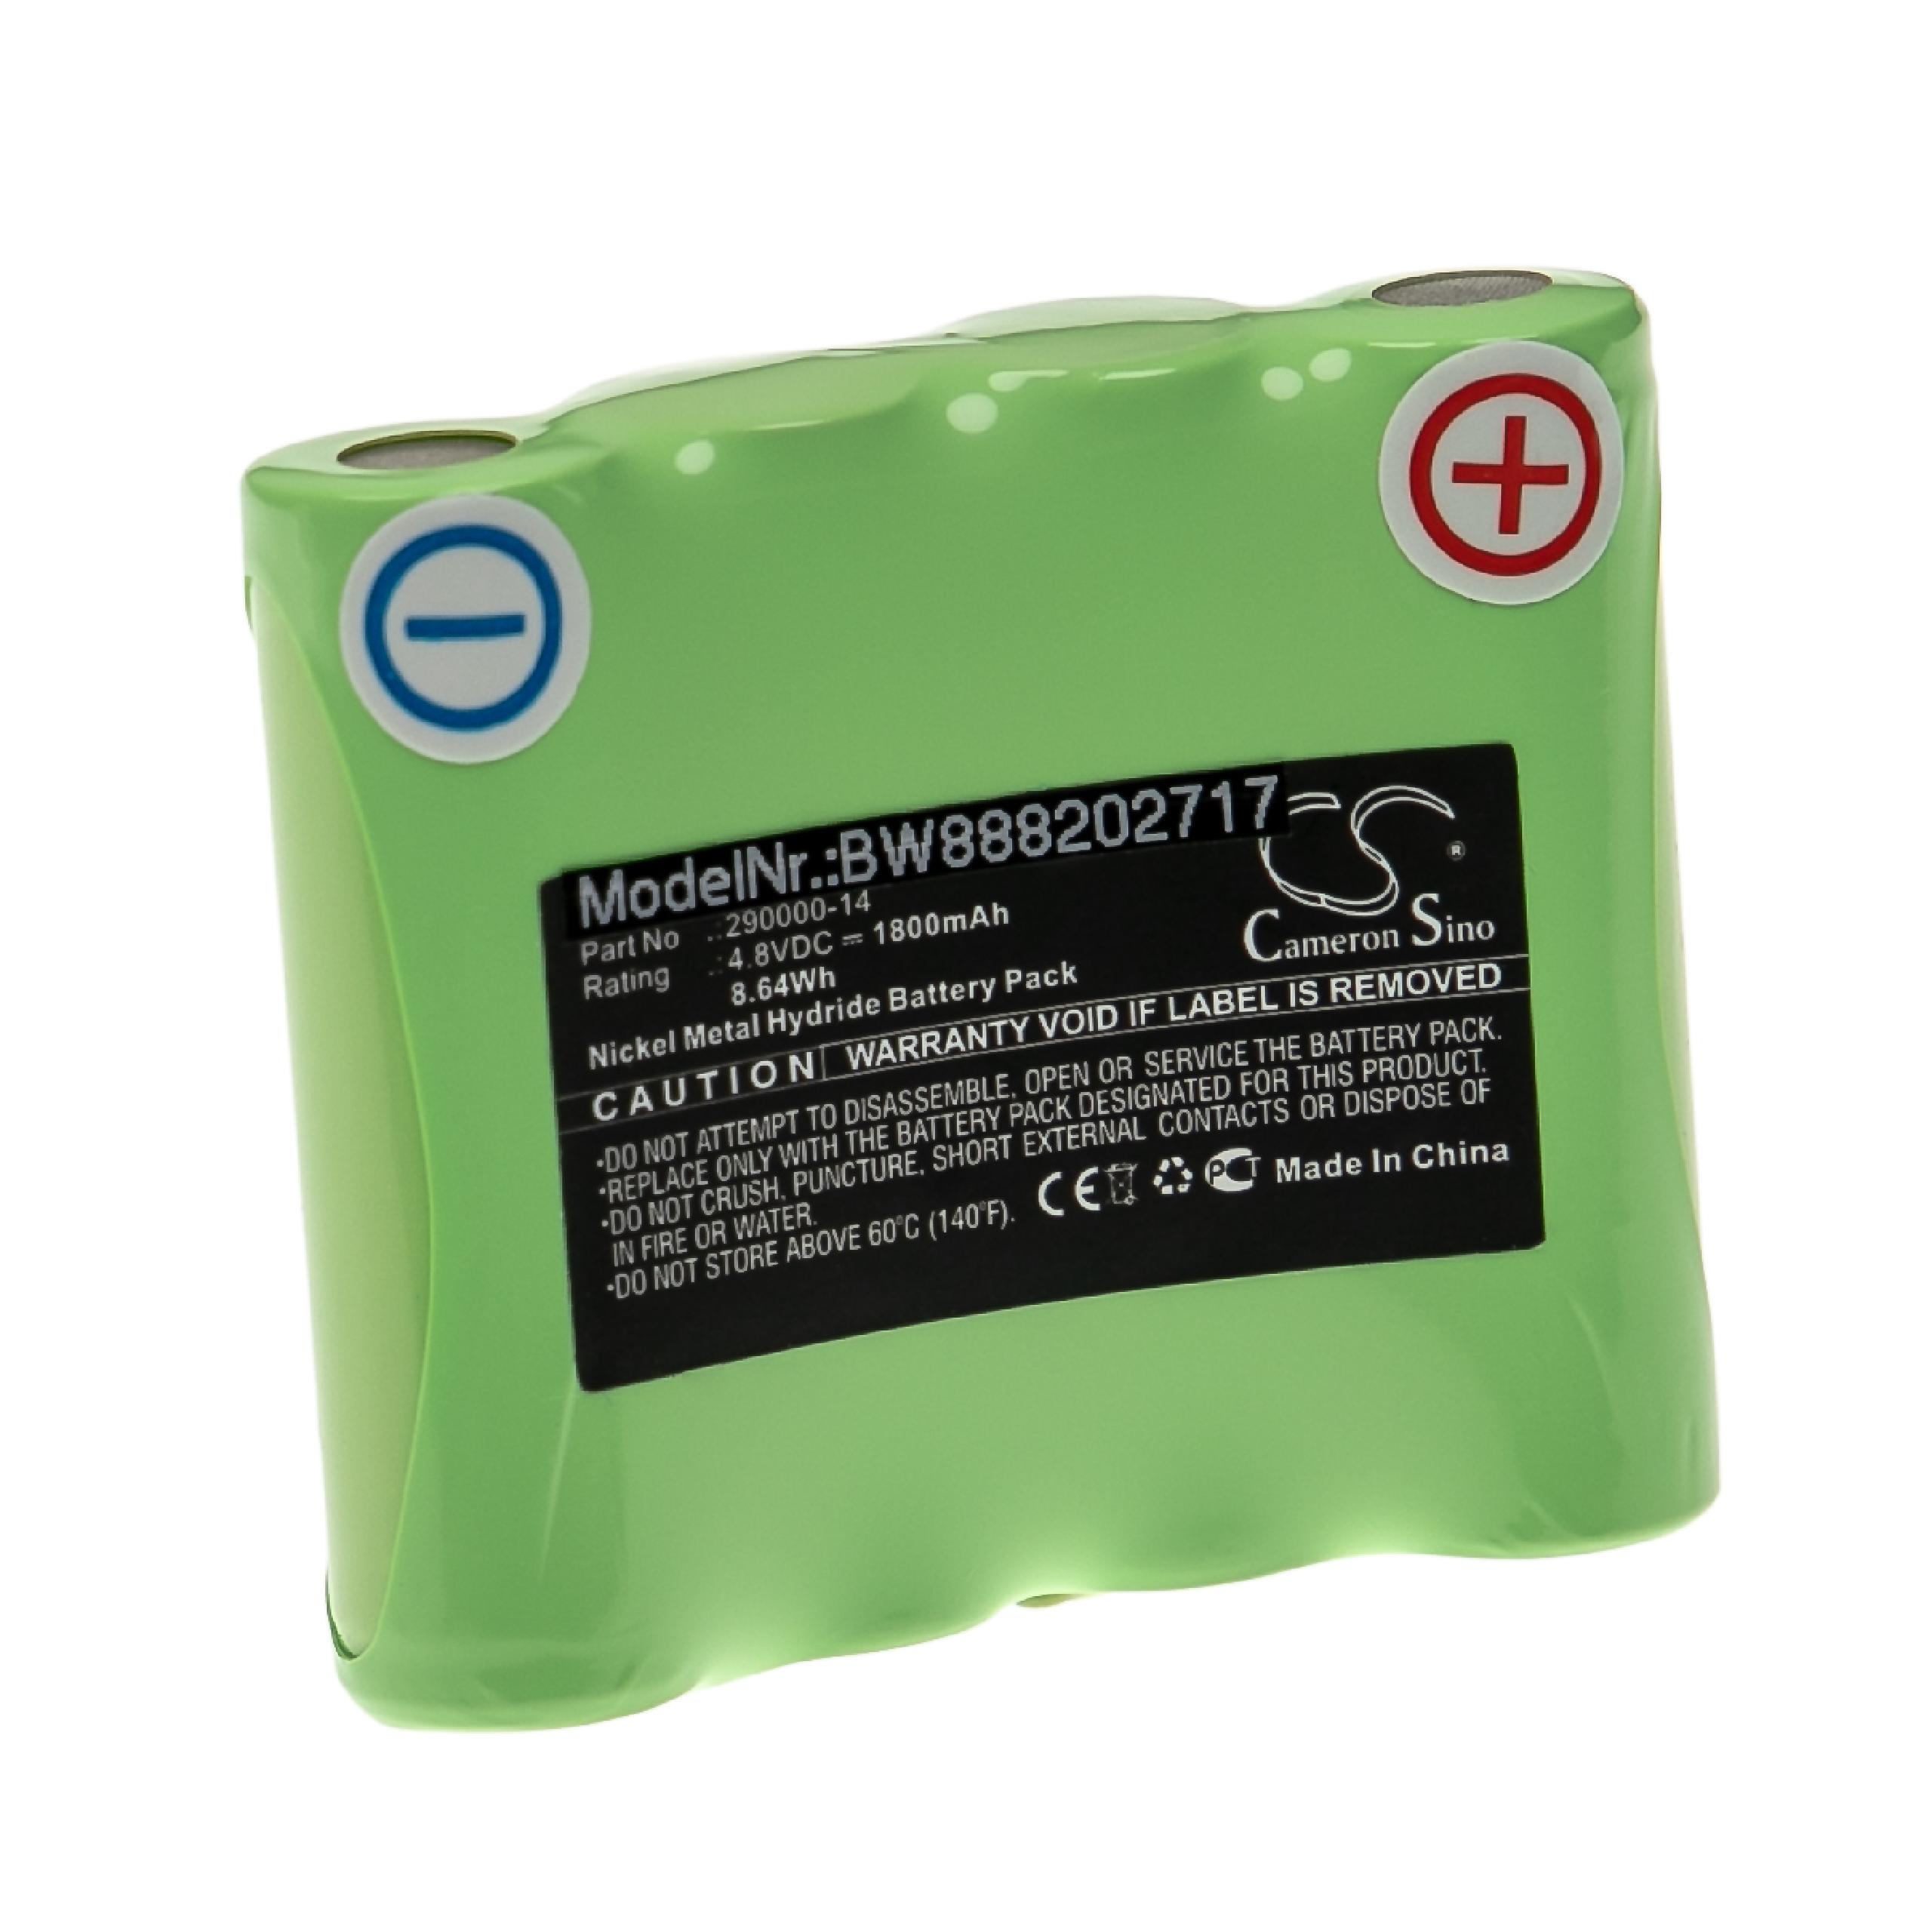 Batterie remplace Rotationslaser 290000-14 pour outil de mesure - 1800mAh 4,8V NiMH